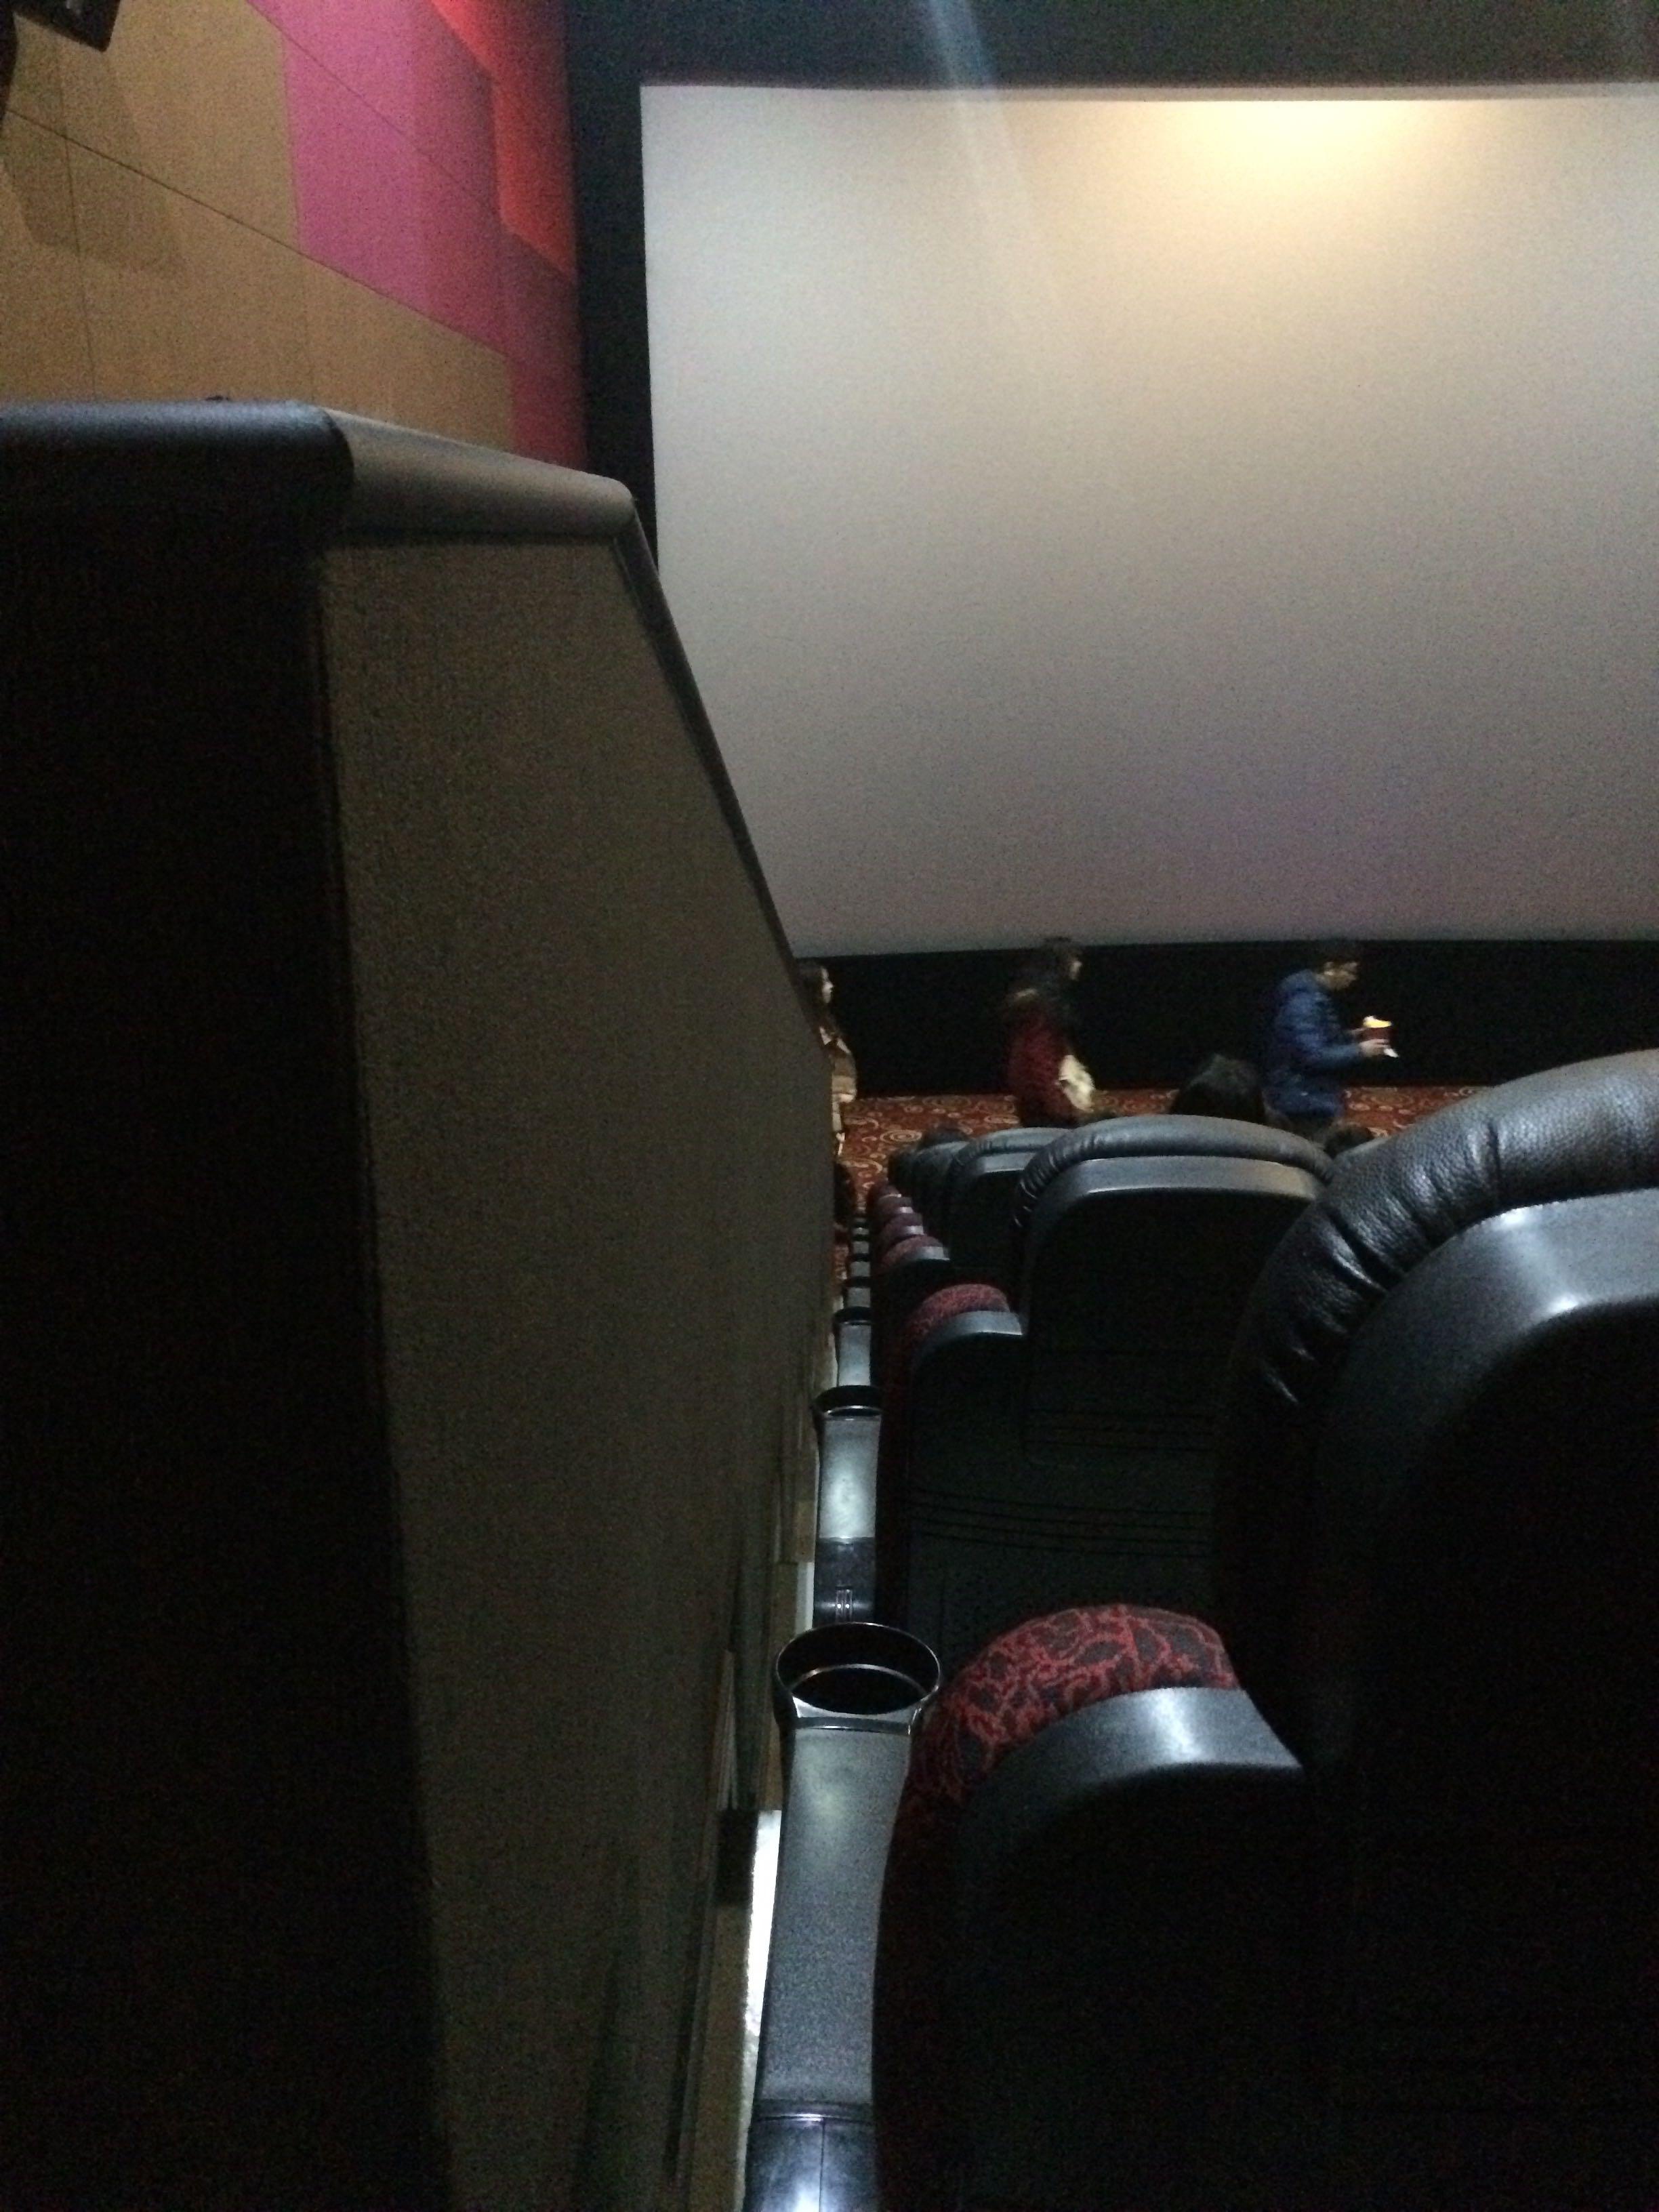 电影院看电影的最佳位置是哪几个座位? - 匿名